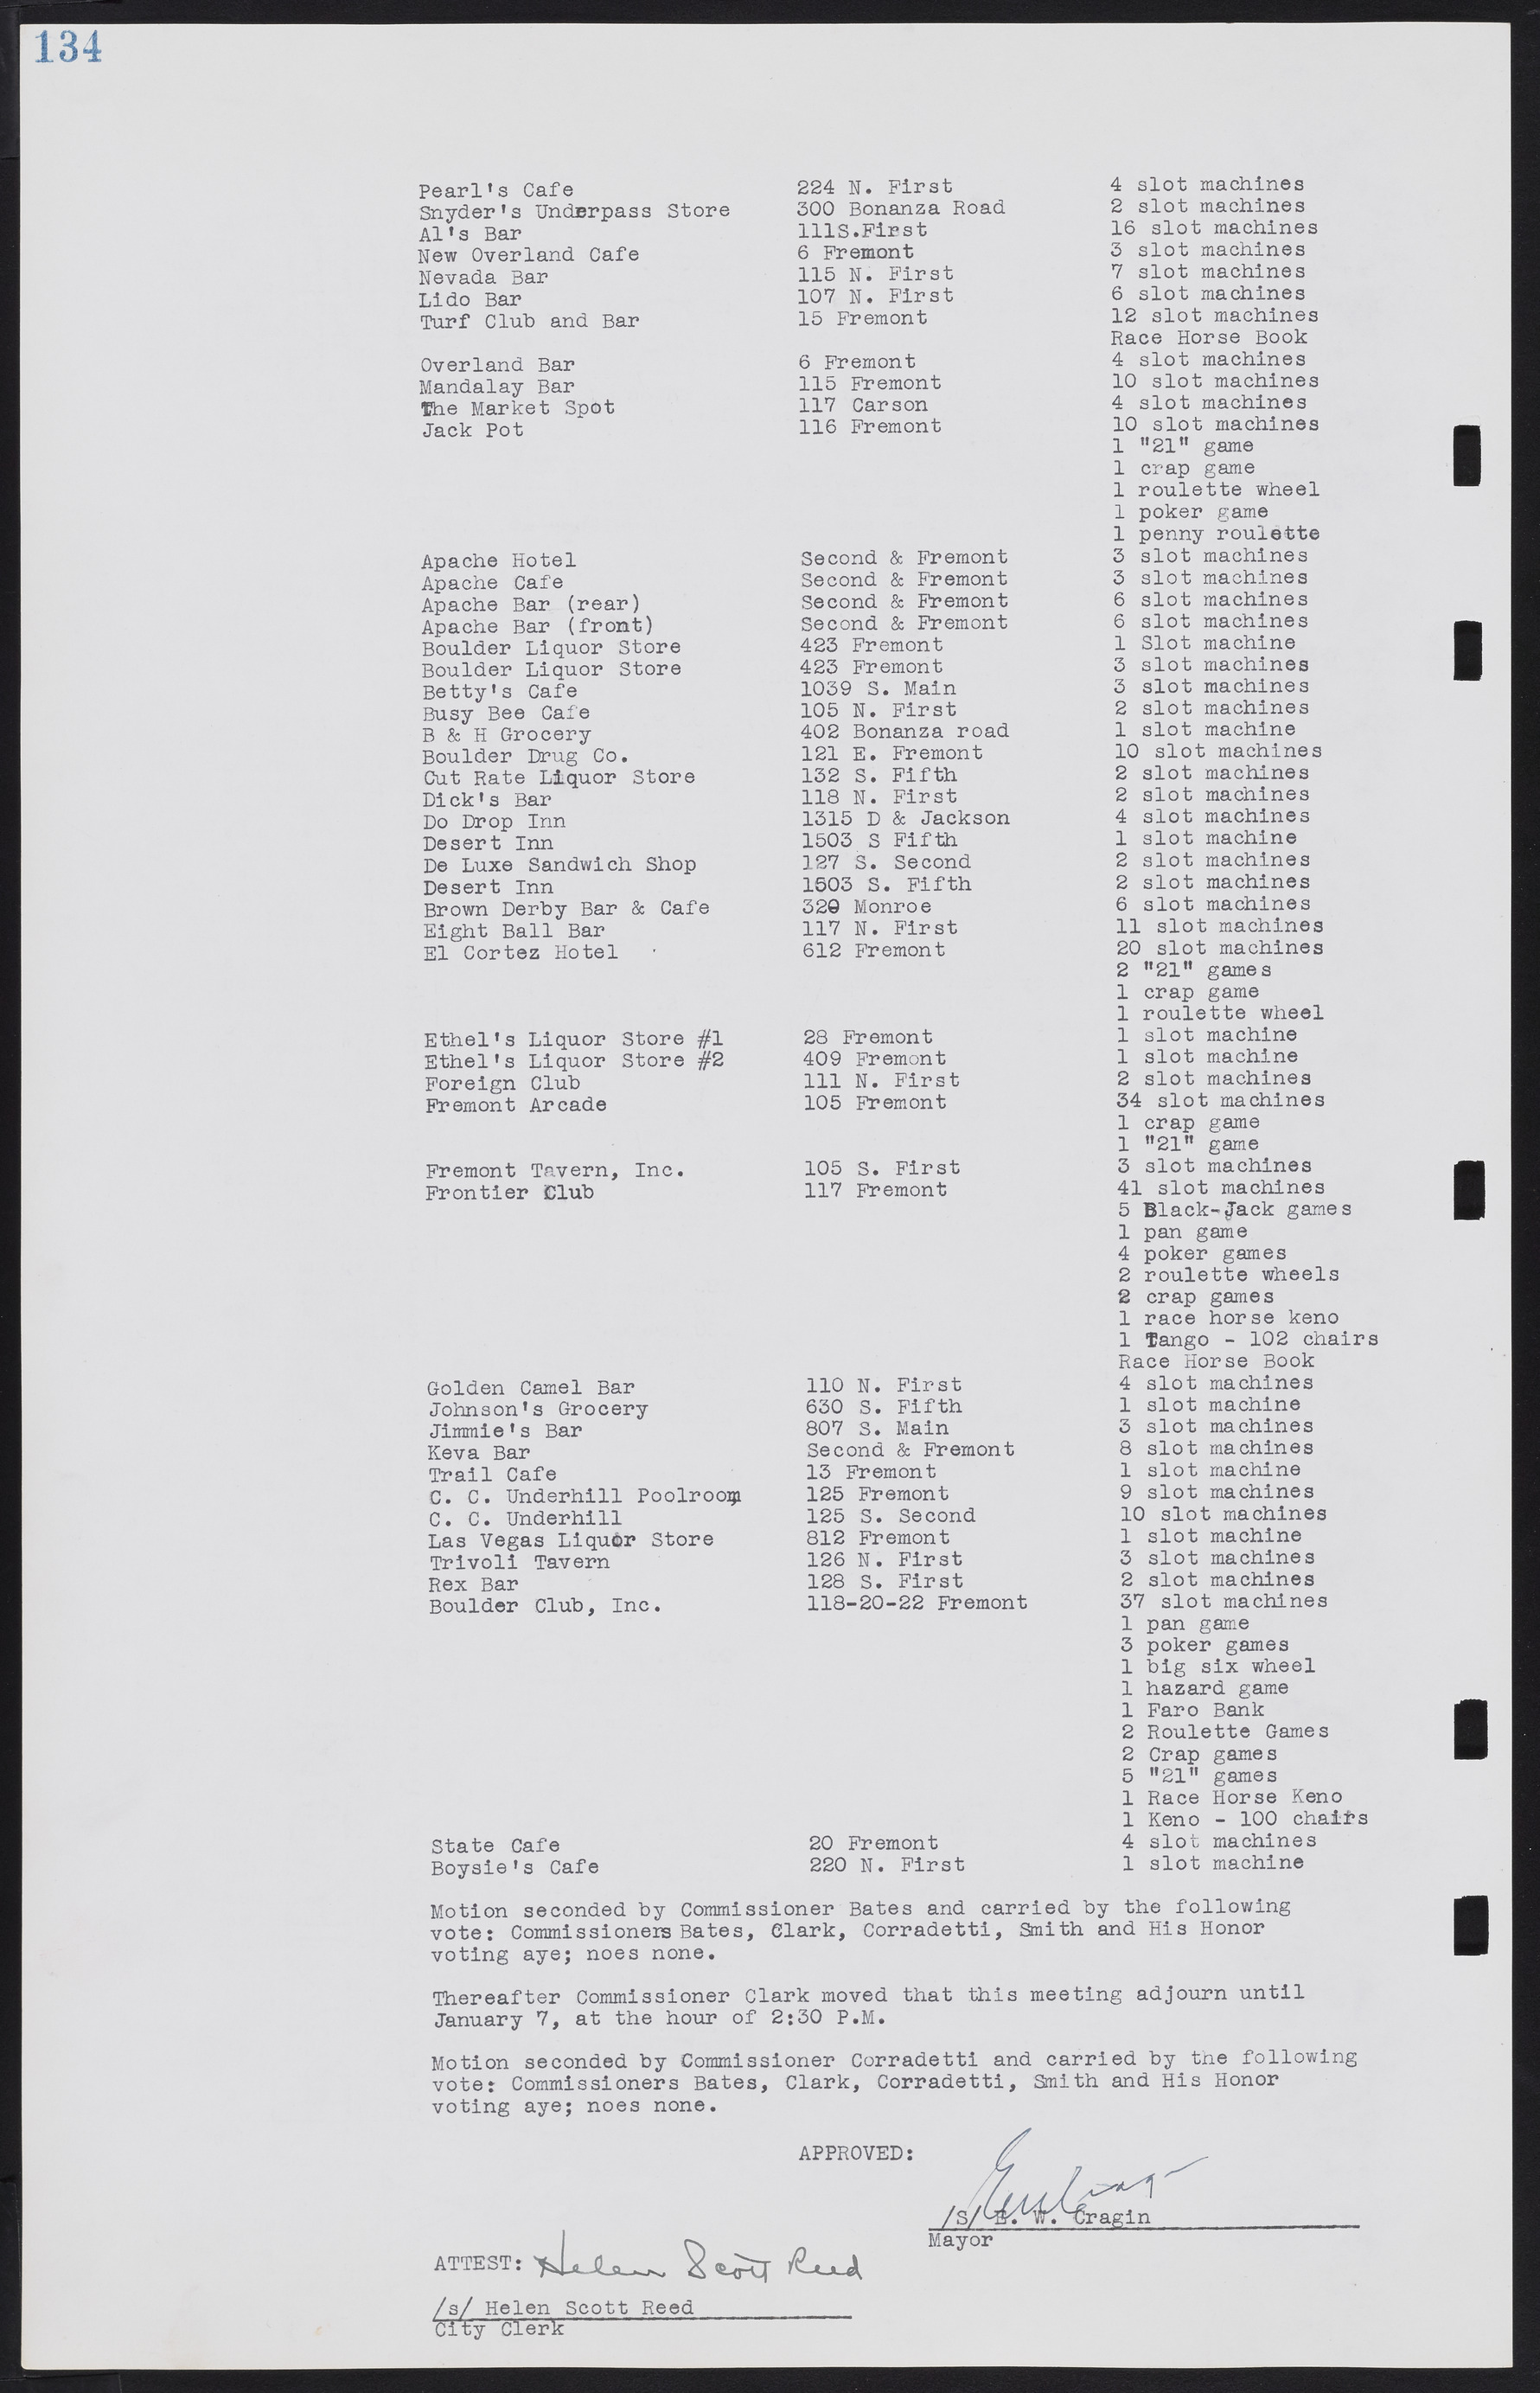 Las Vegas City Commission Minutes, August 11, 1942 to December 30, 1946, lvc000005-149